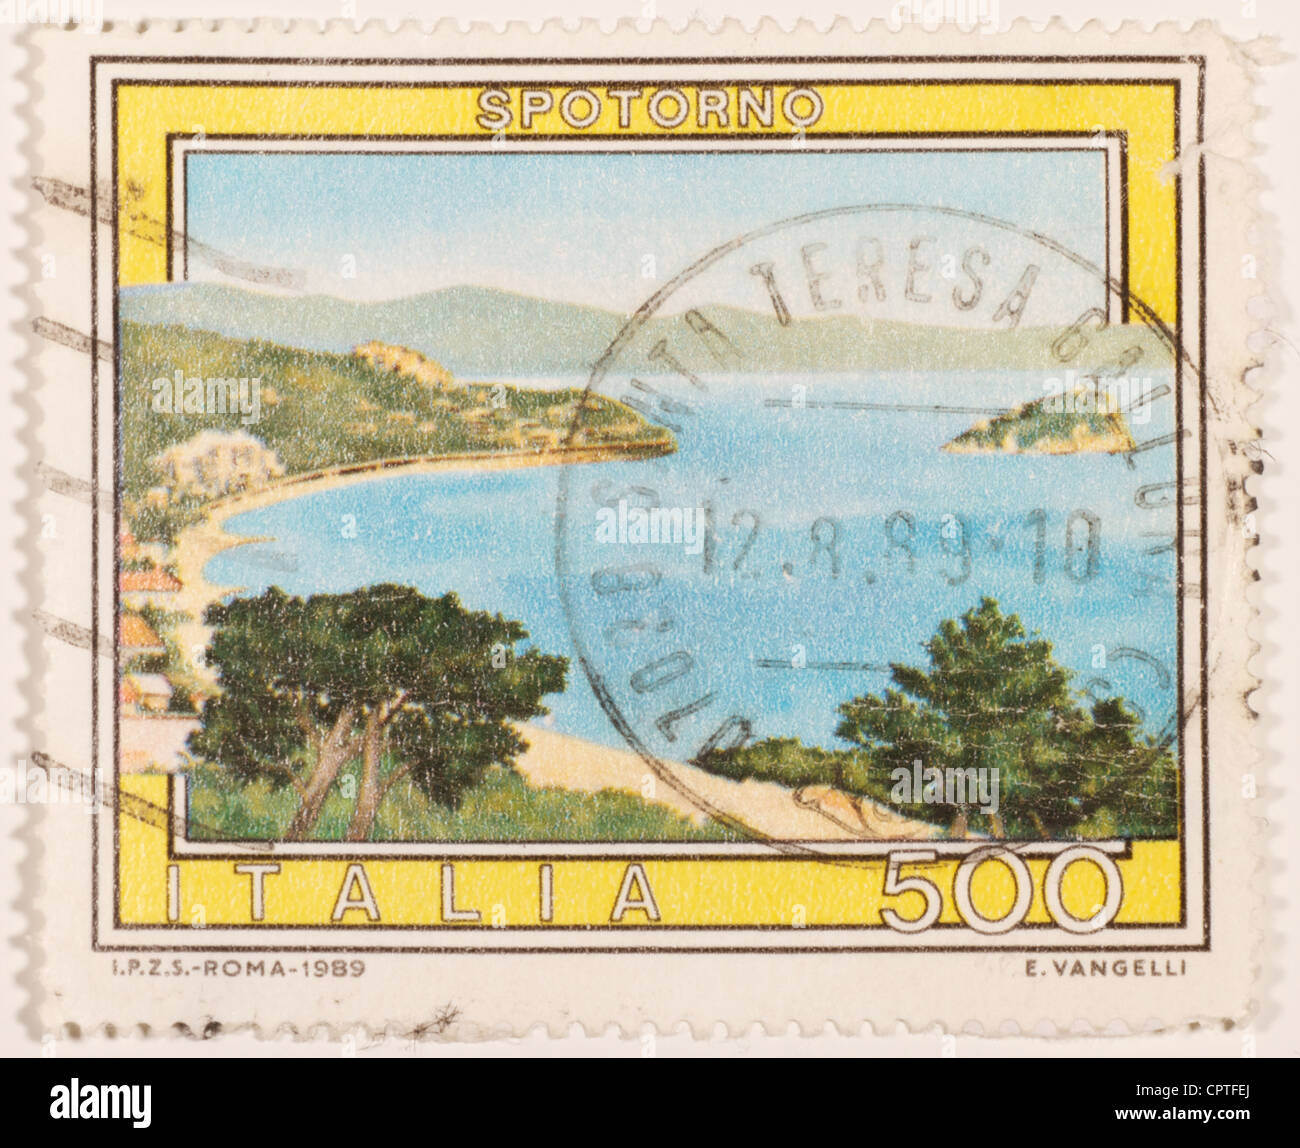 italian stamps Stock Photo